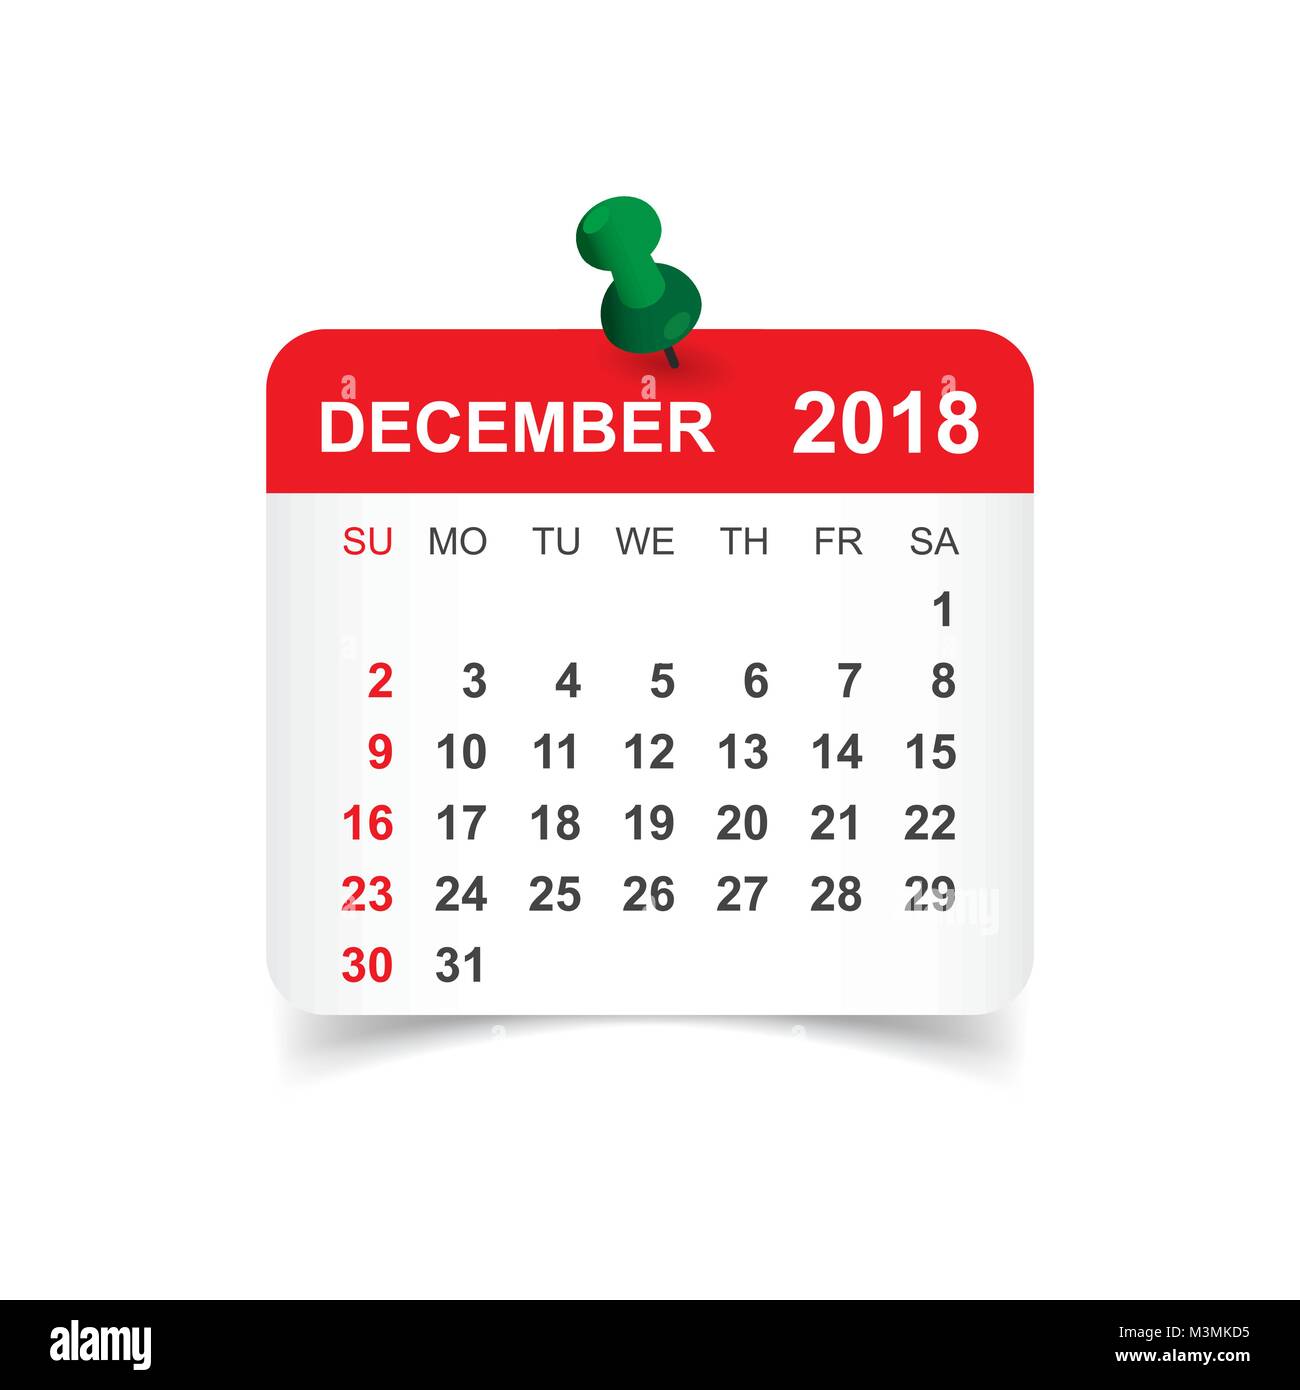 december-2018-calendar-calendar-sticker-design-template-week-starts